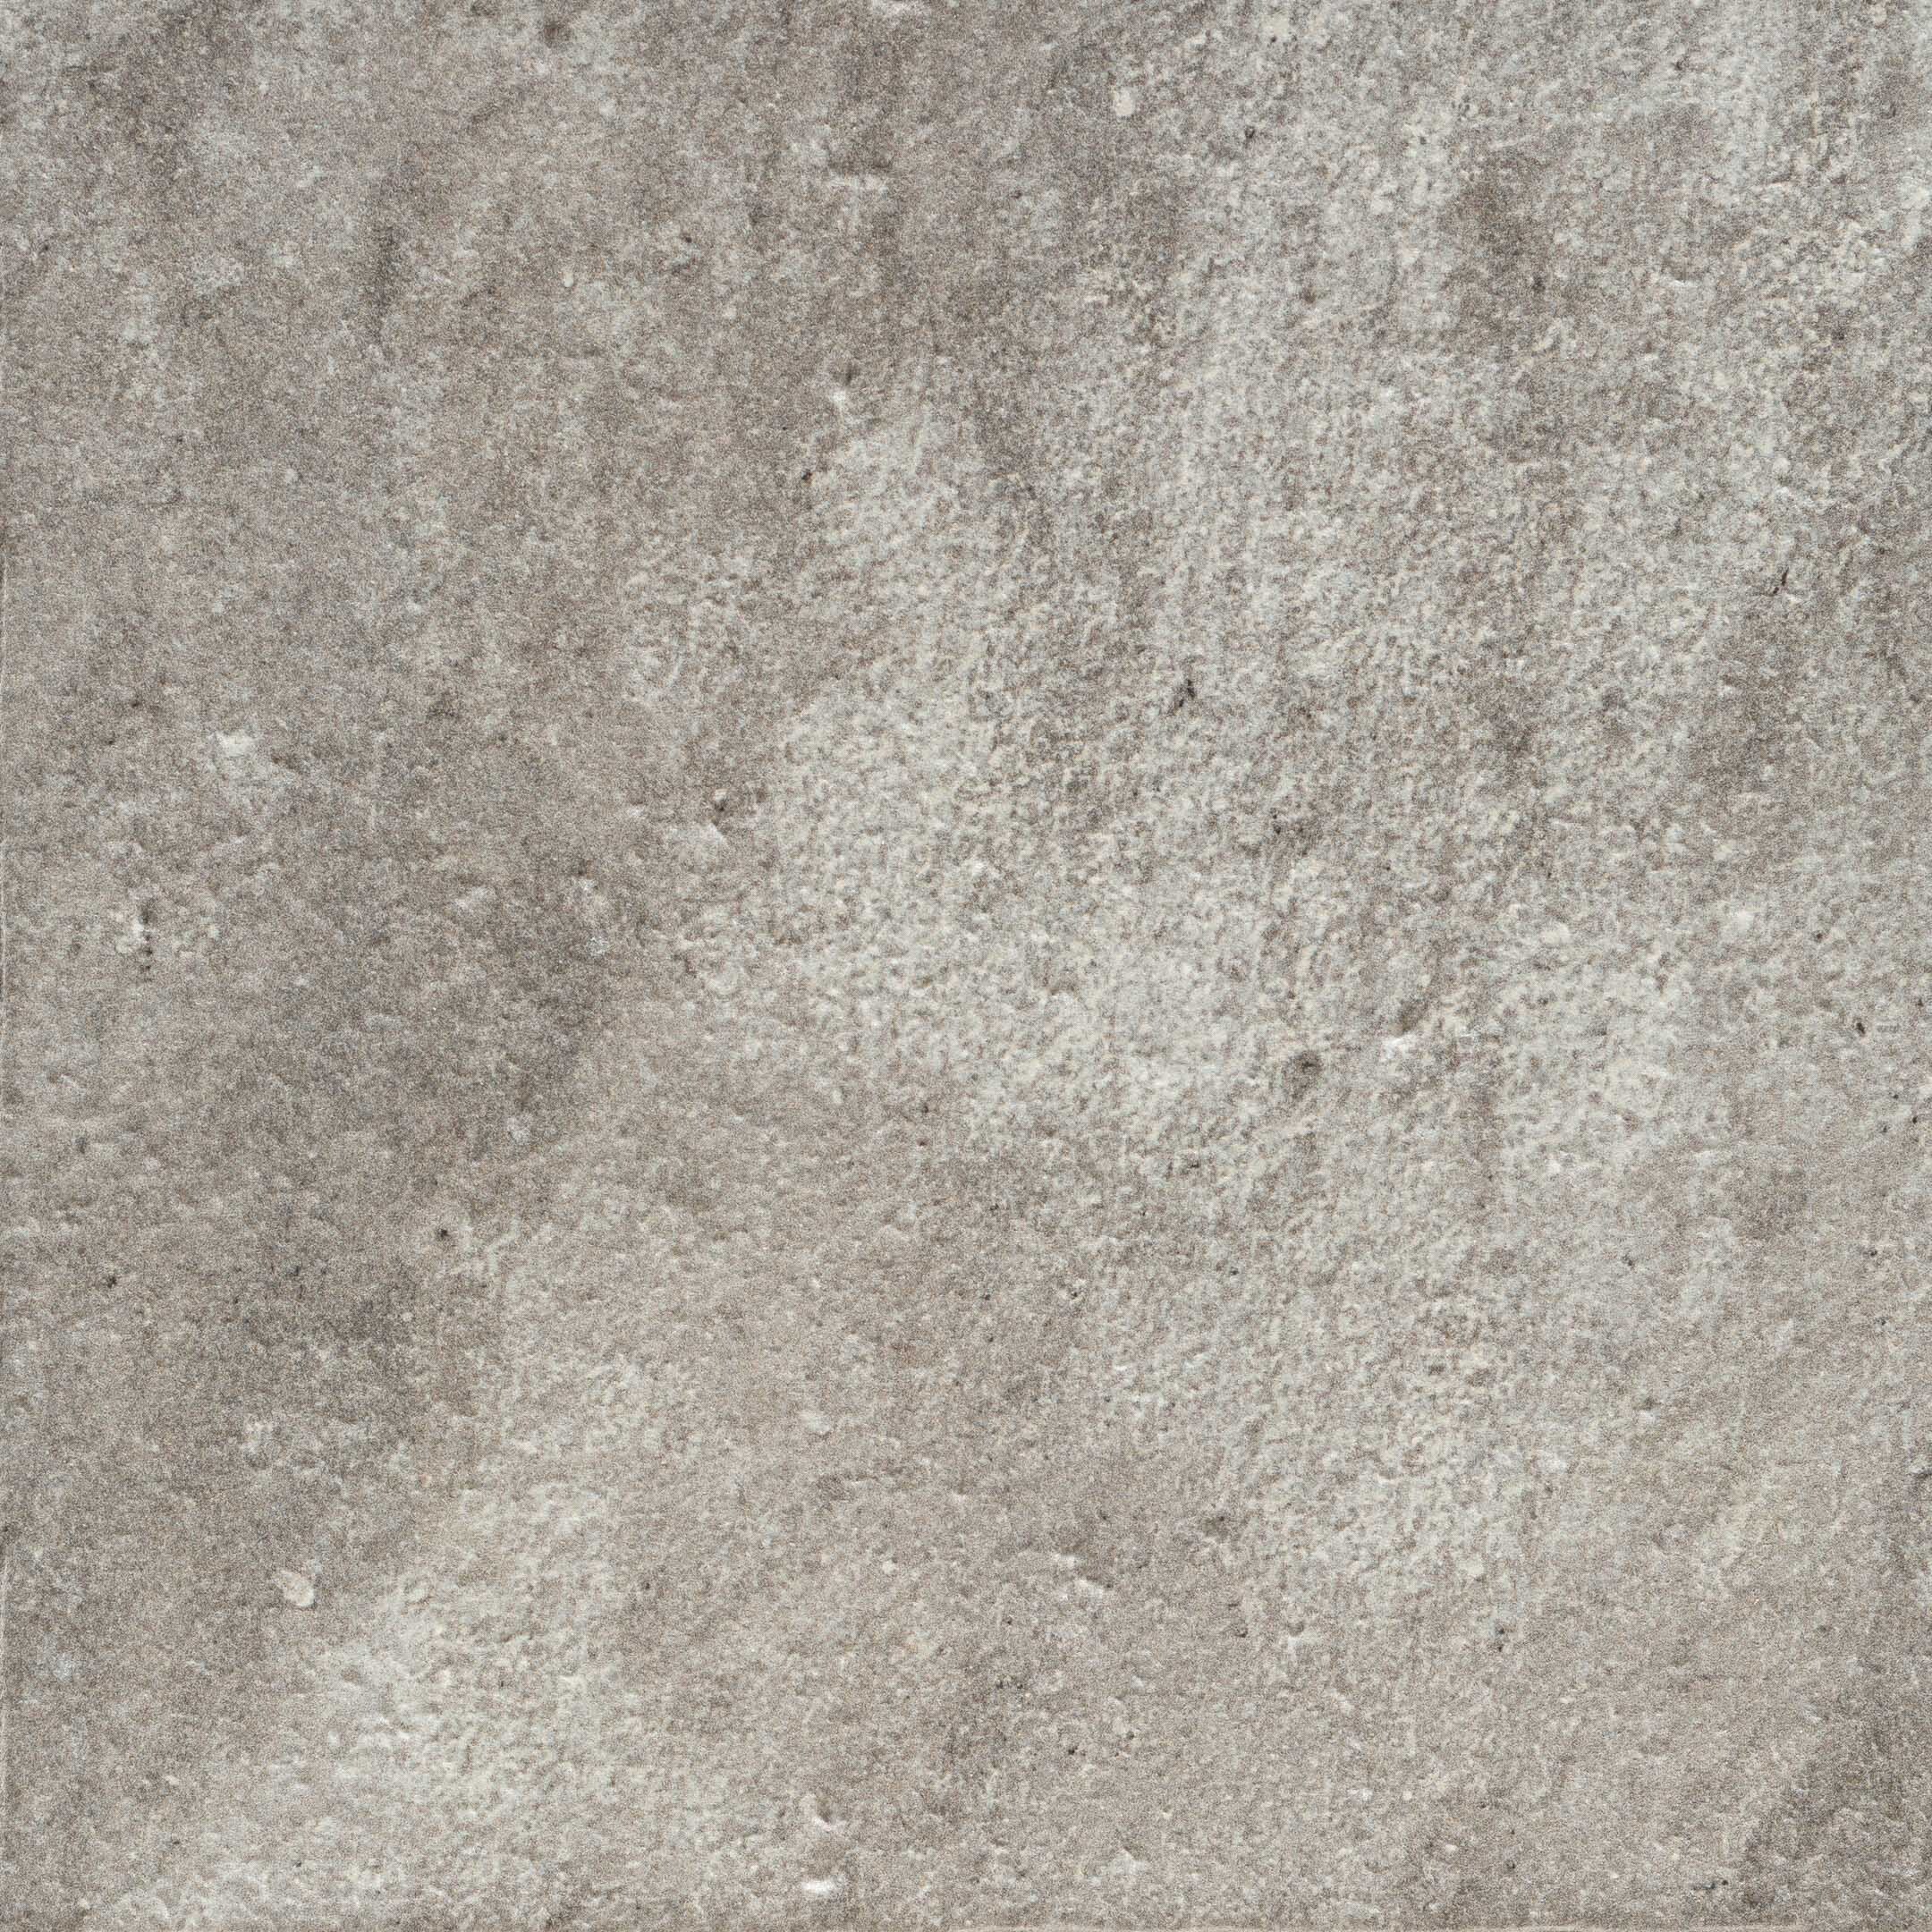 Клинкерная плитка Exagres Manhattan серая 245х245х9 мм (16 шт.=0,96 кв.м) клинкерная плитка для ступеней базовая exagres manhattan grey 24 5х24 5